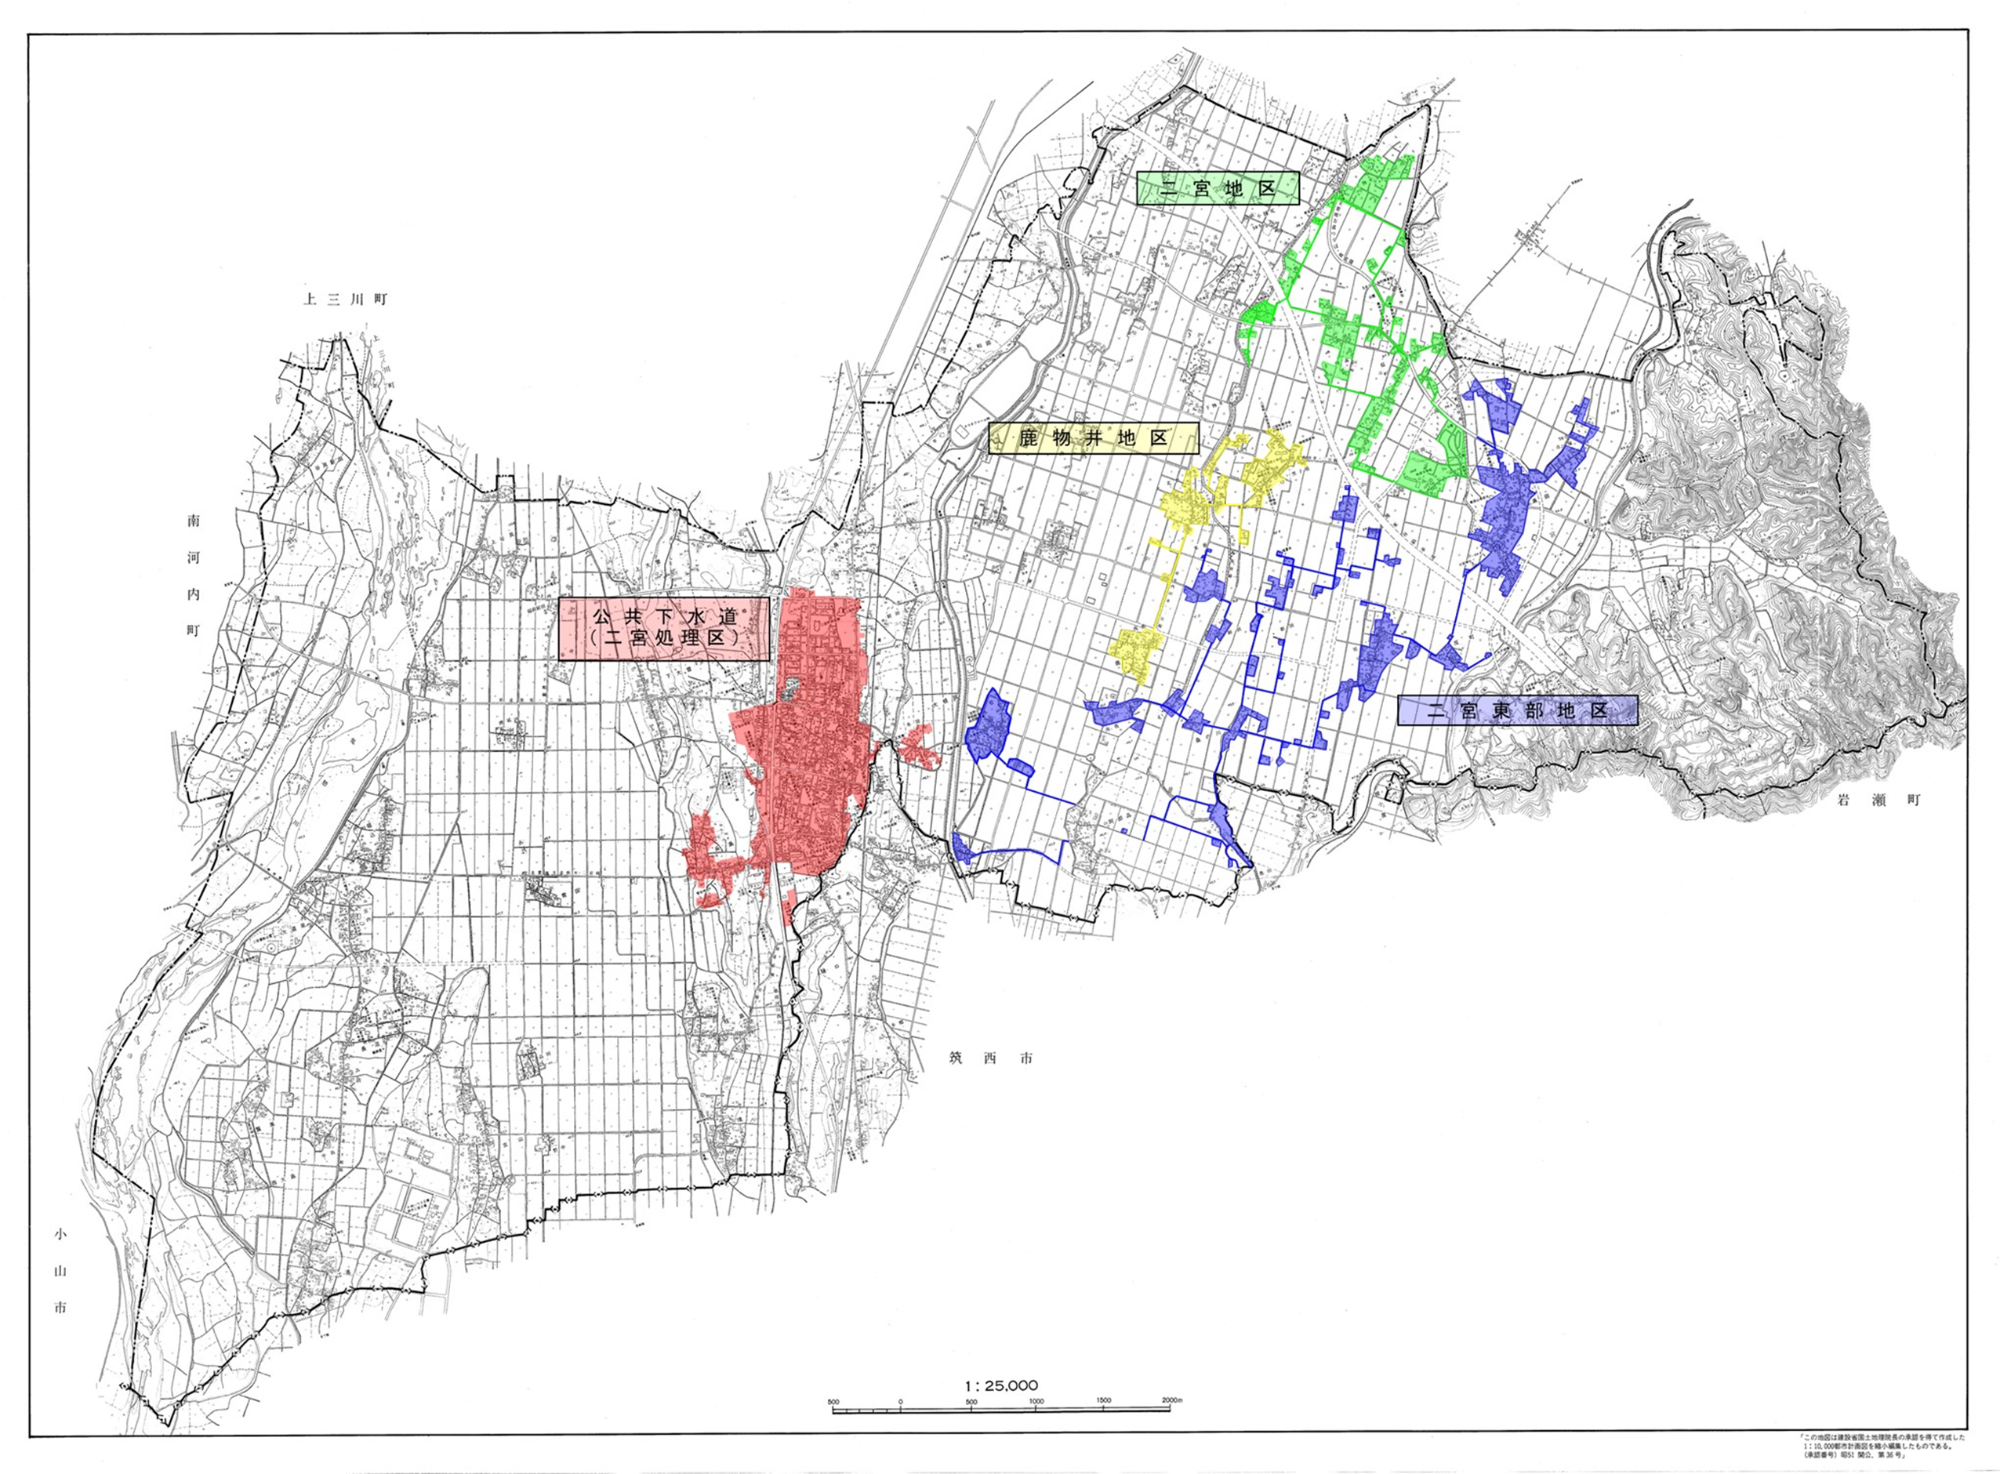 二宮地区供用開始区域図（令和4年3月31日現在）